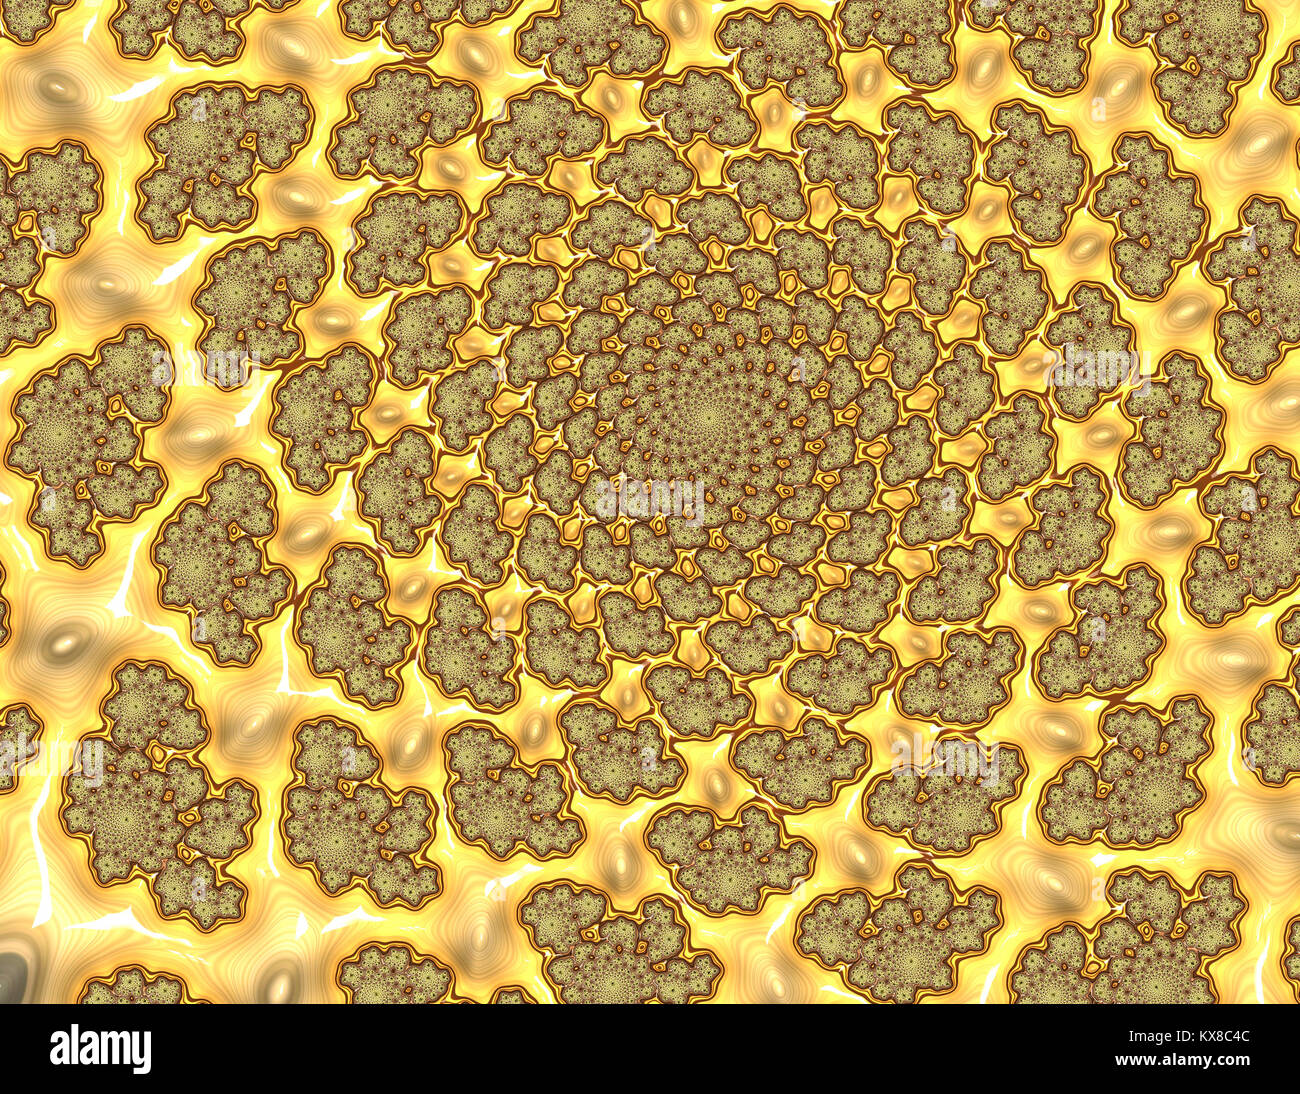 Fraktale - seltsam geformte Blobs blobs Kreisen auf einem goldenem Hintergrund Stockfoto